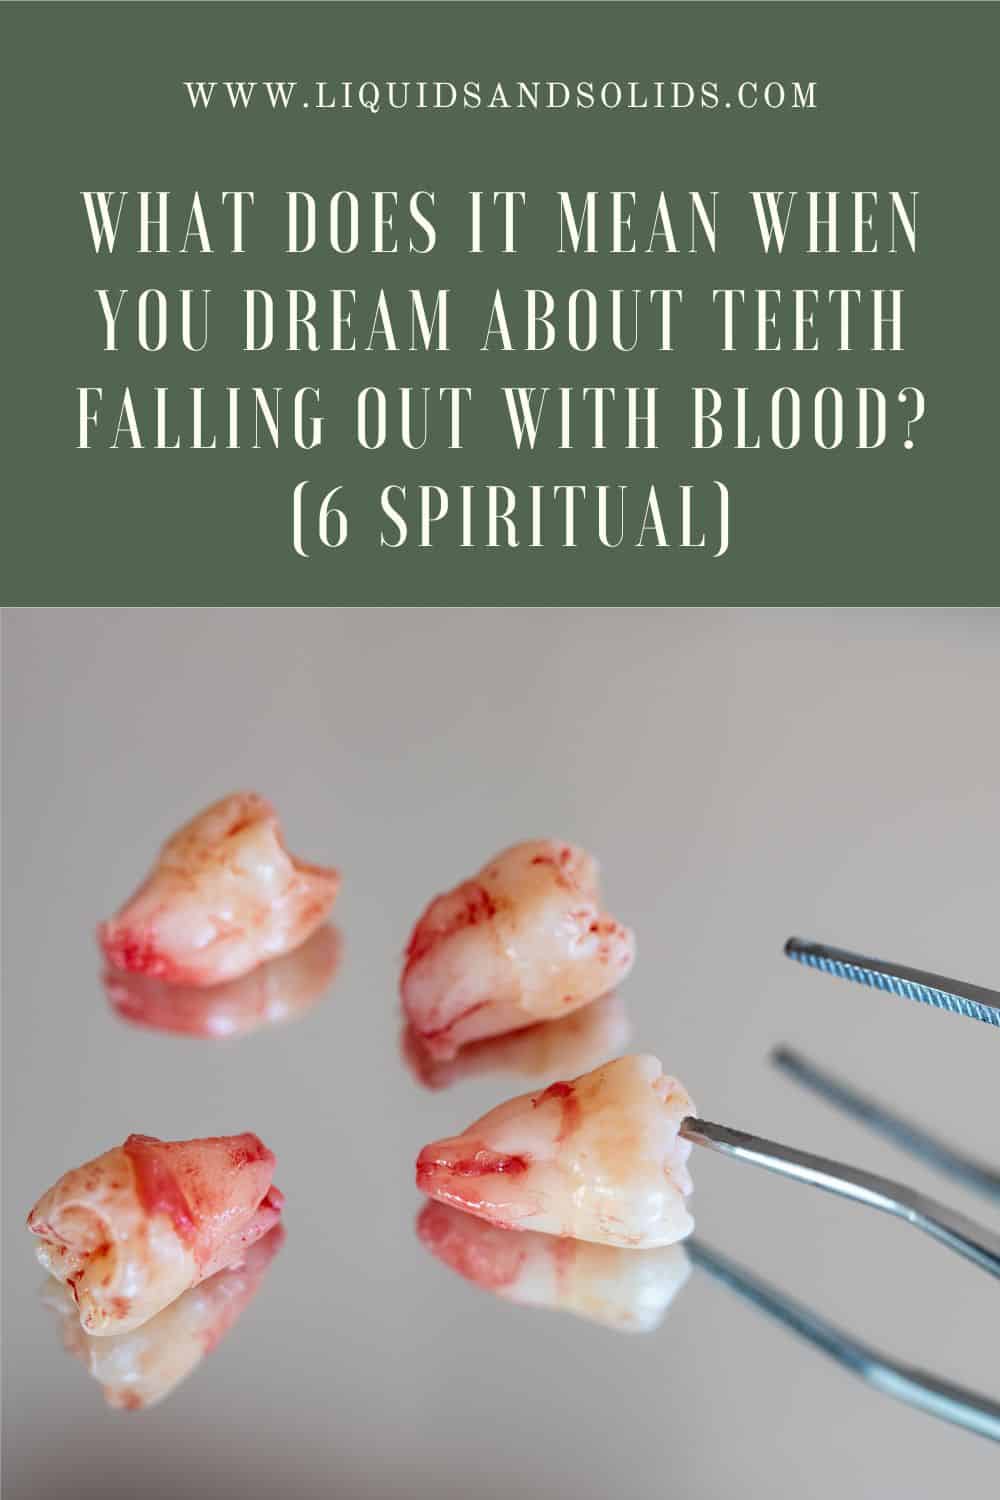  Rêve de dents qui tombent avec du sang (6 significations spirituelles)